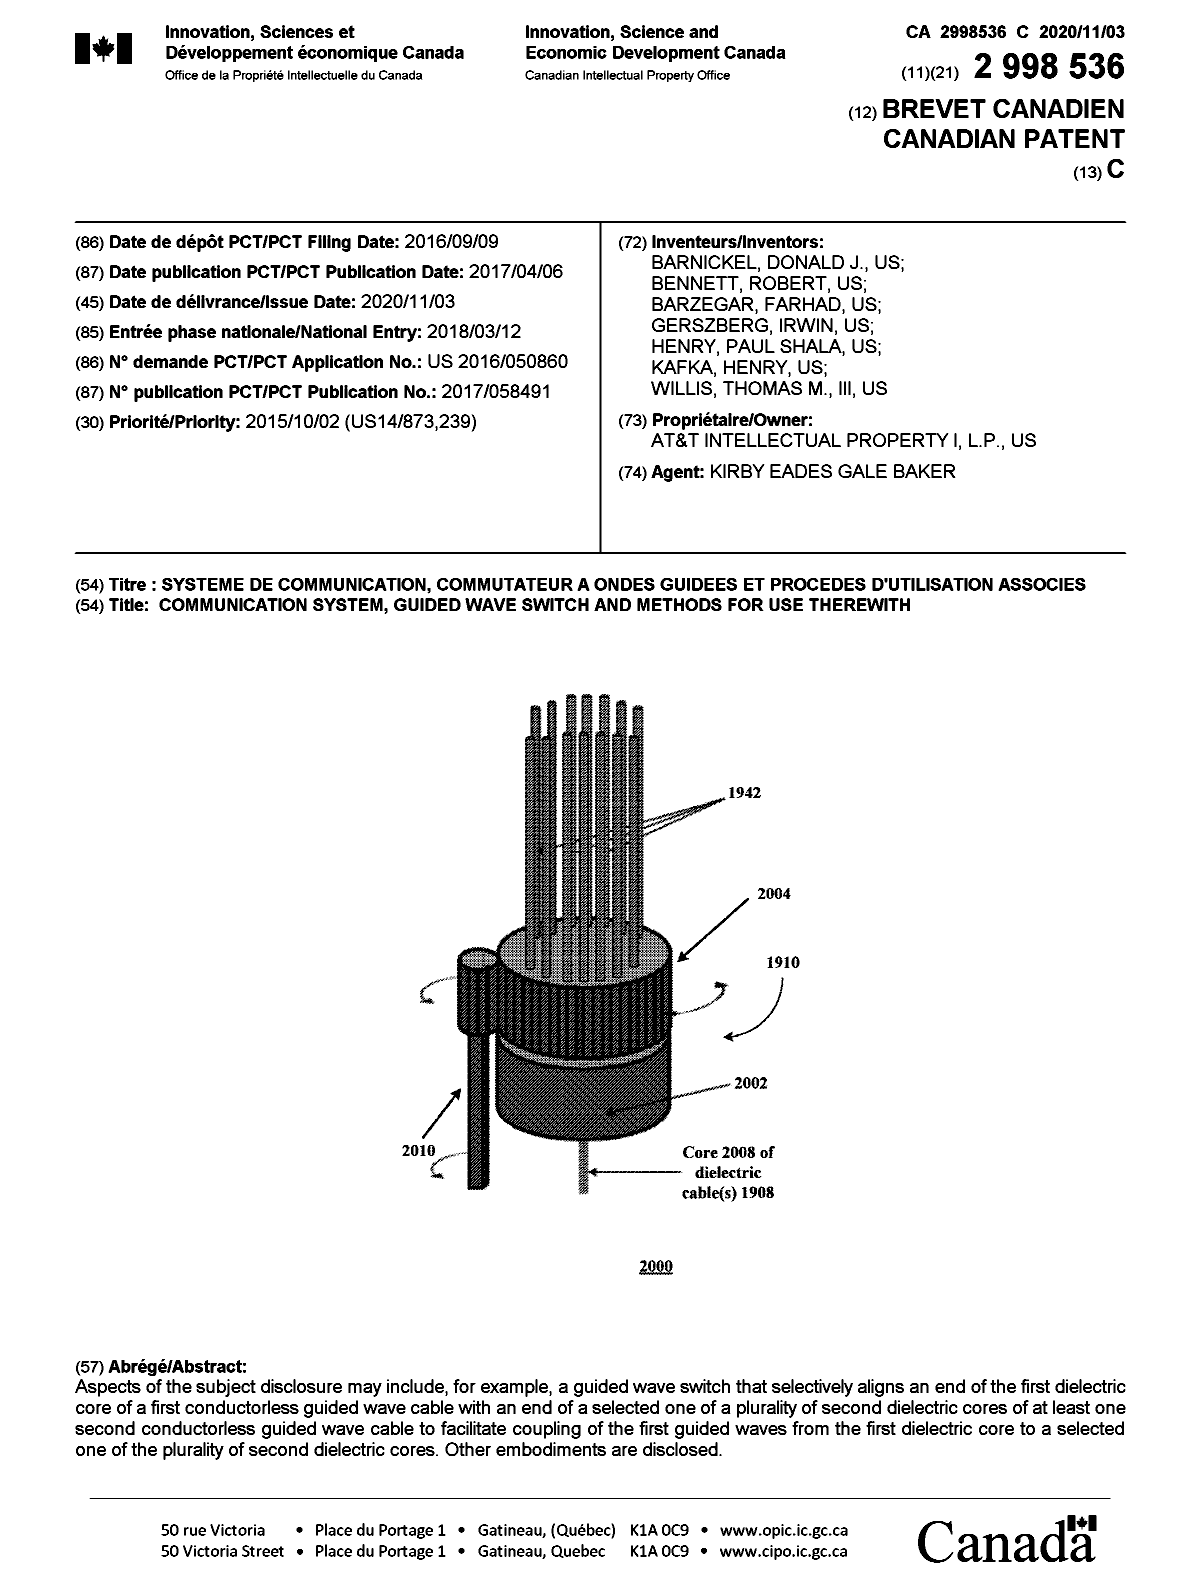 Document de brevet canadien 2998536. Page couverture 20201009. Image 1 de 1